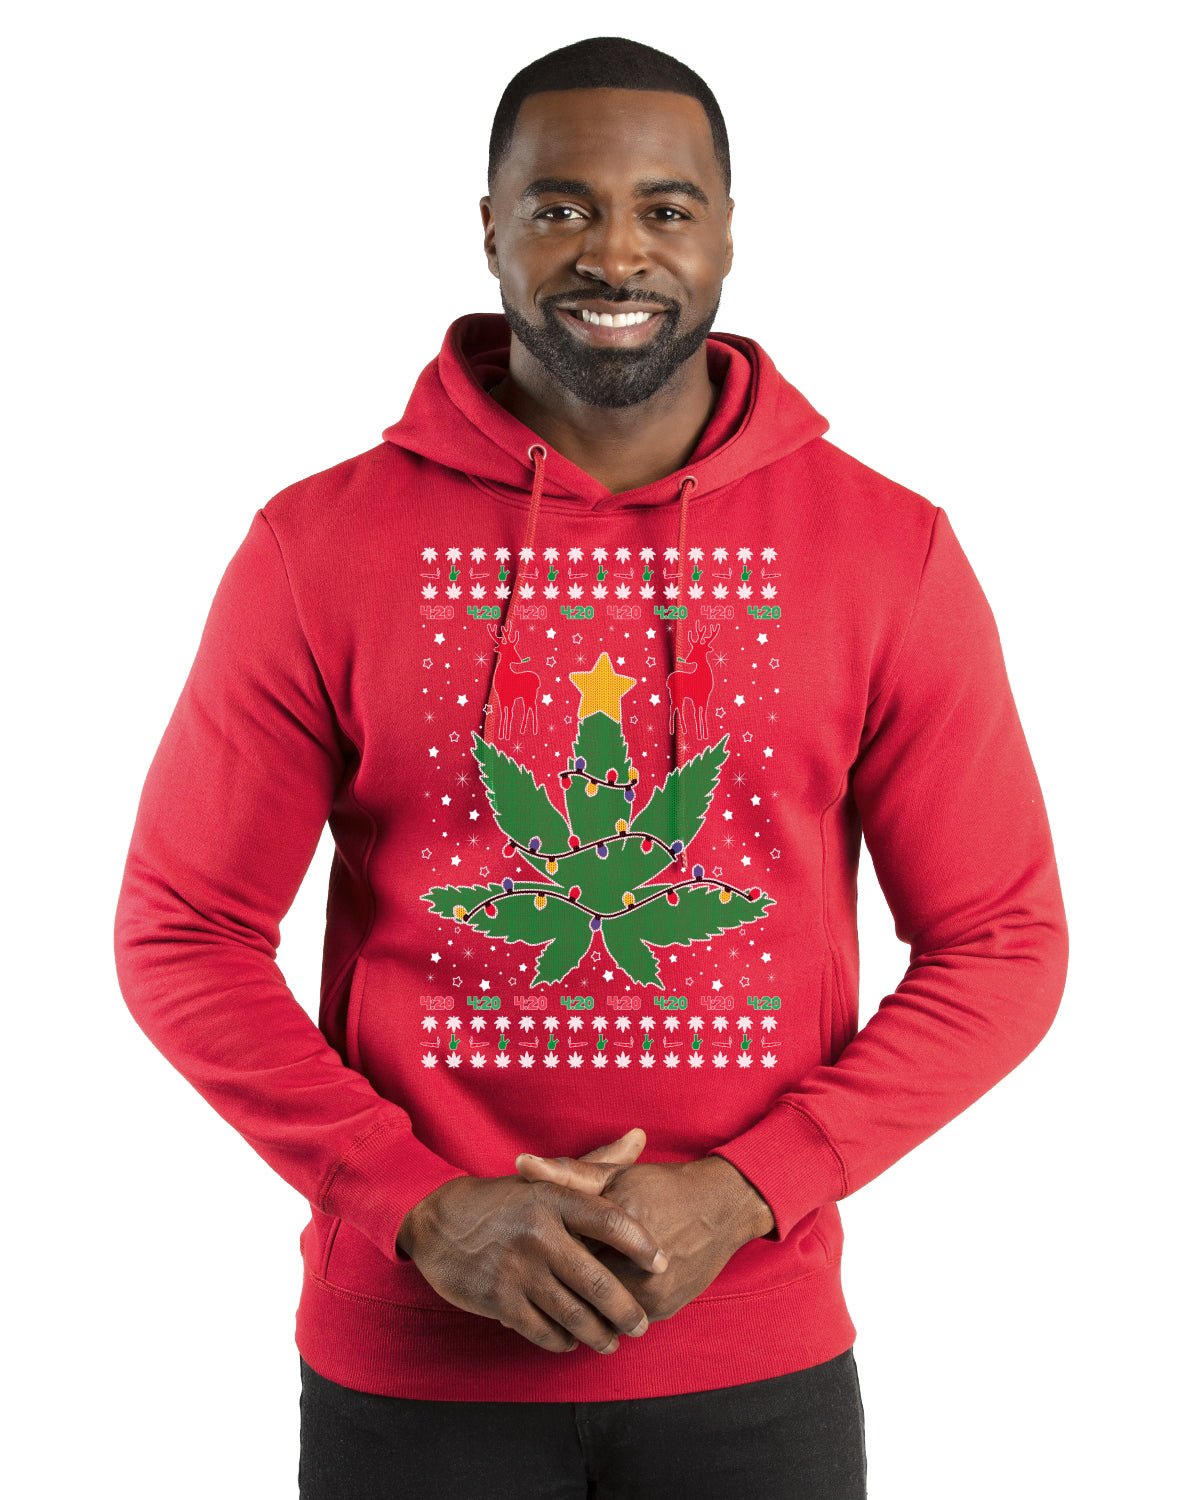 Weed Marijuana Lit Deer Pot Leaf Xmas Lights Christmas Premium Graphic Hoodie Sweatshirt